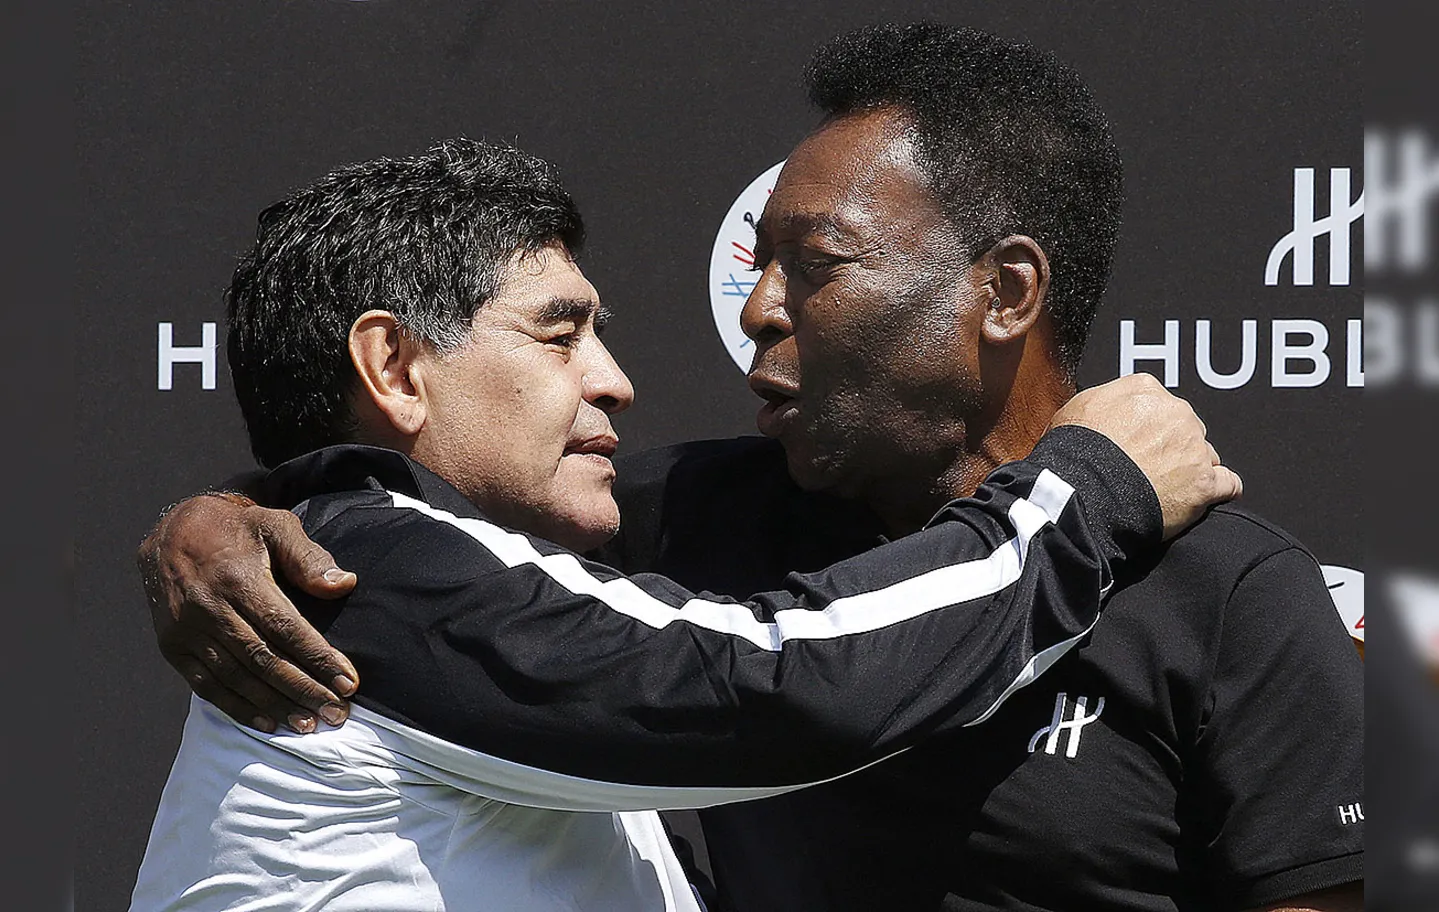 Pelé e Maradona tinham uma relação tensa em meio a disputas sobre quem foi o melhor jogador de futebol da história | Foto: Patrick Kovarik | AFP